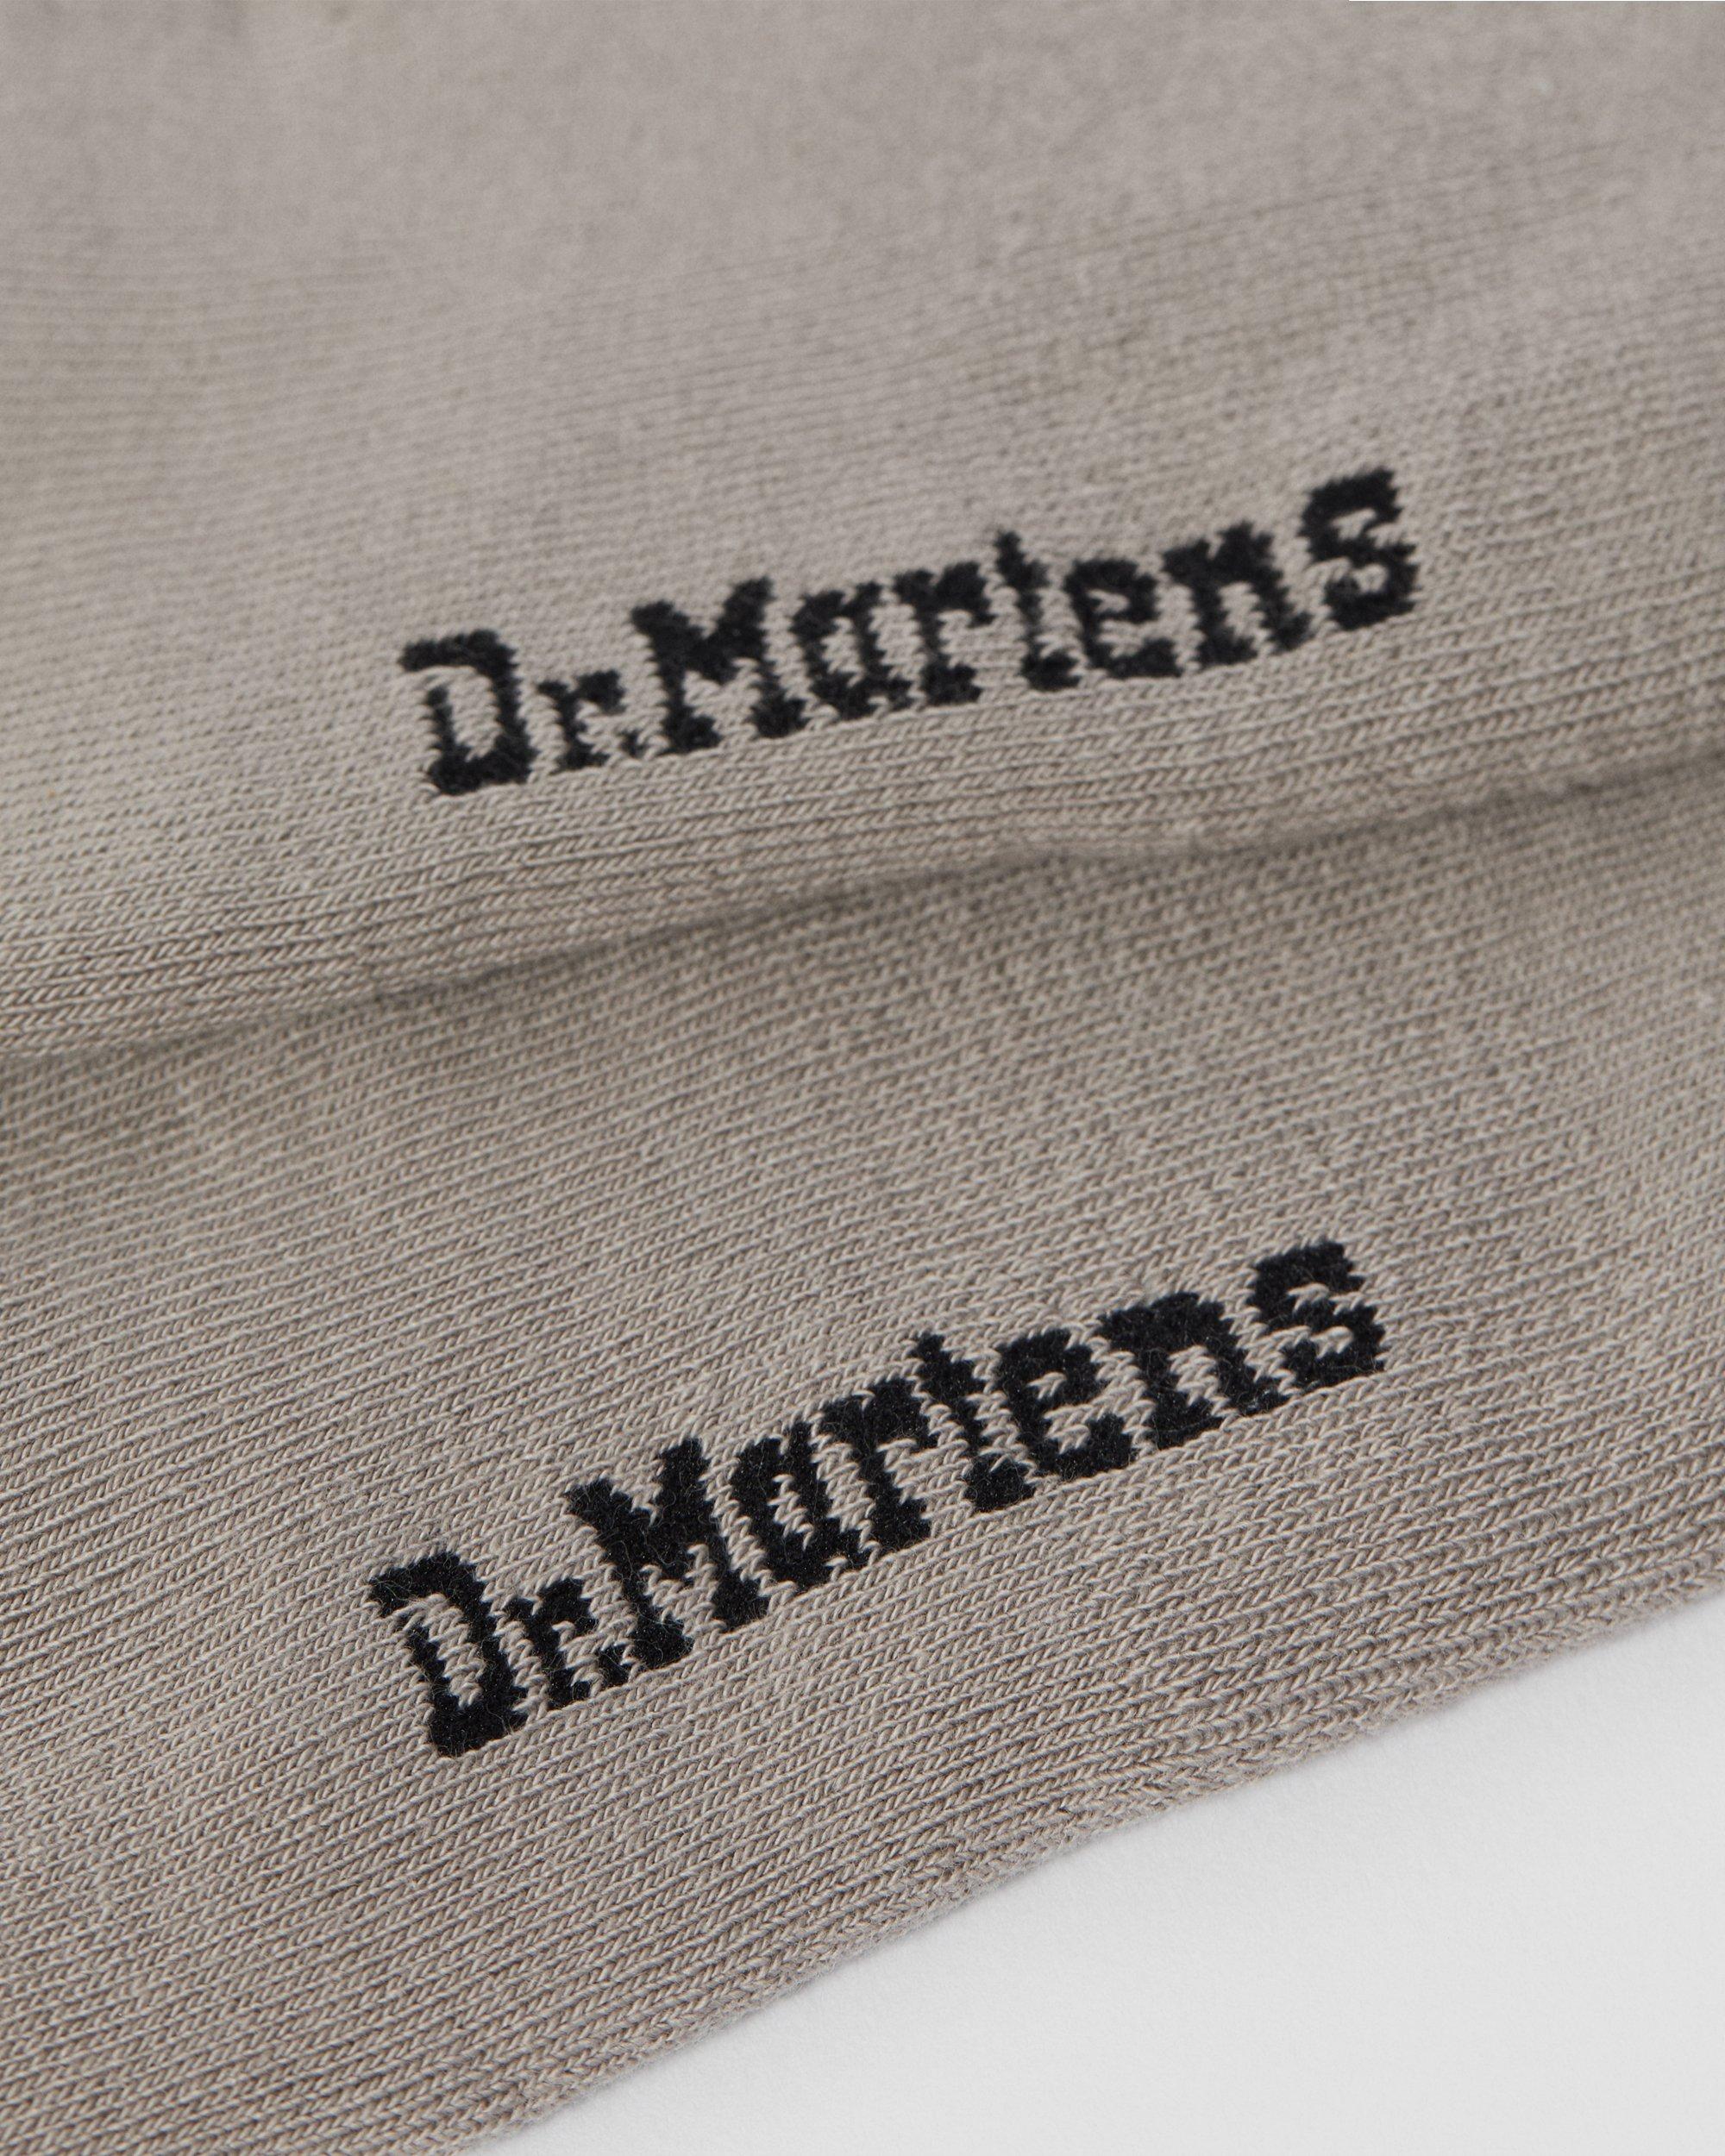 dr martens doc socks